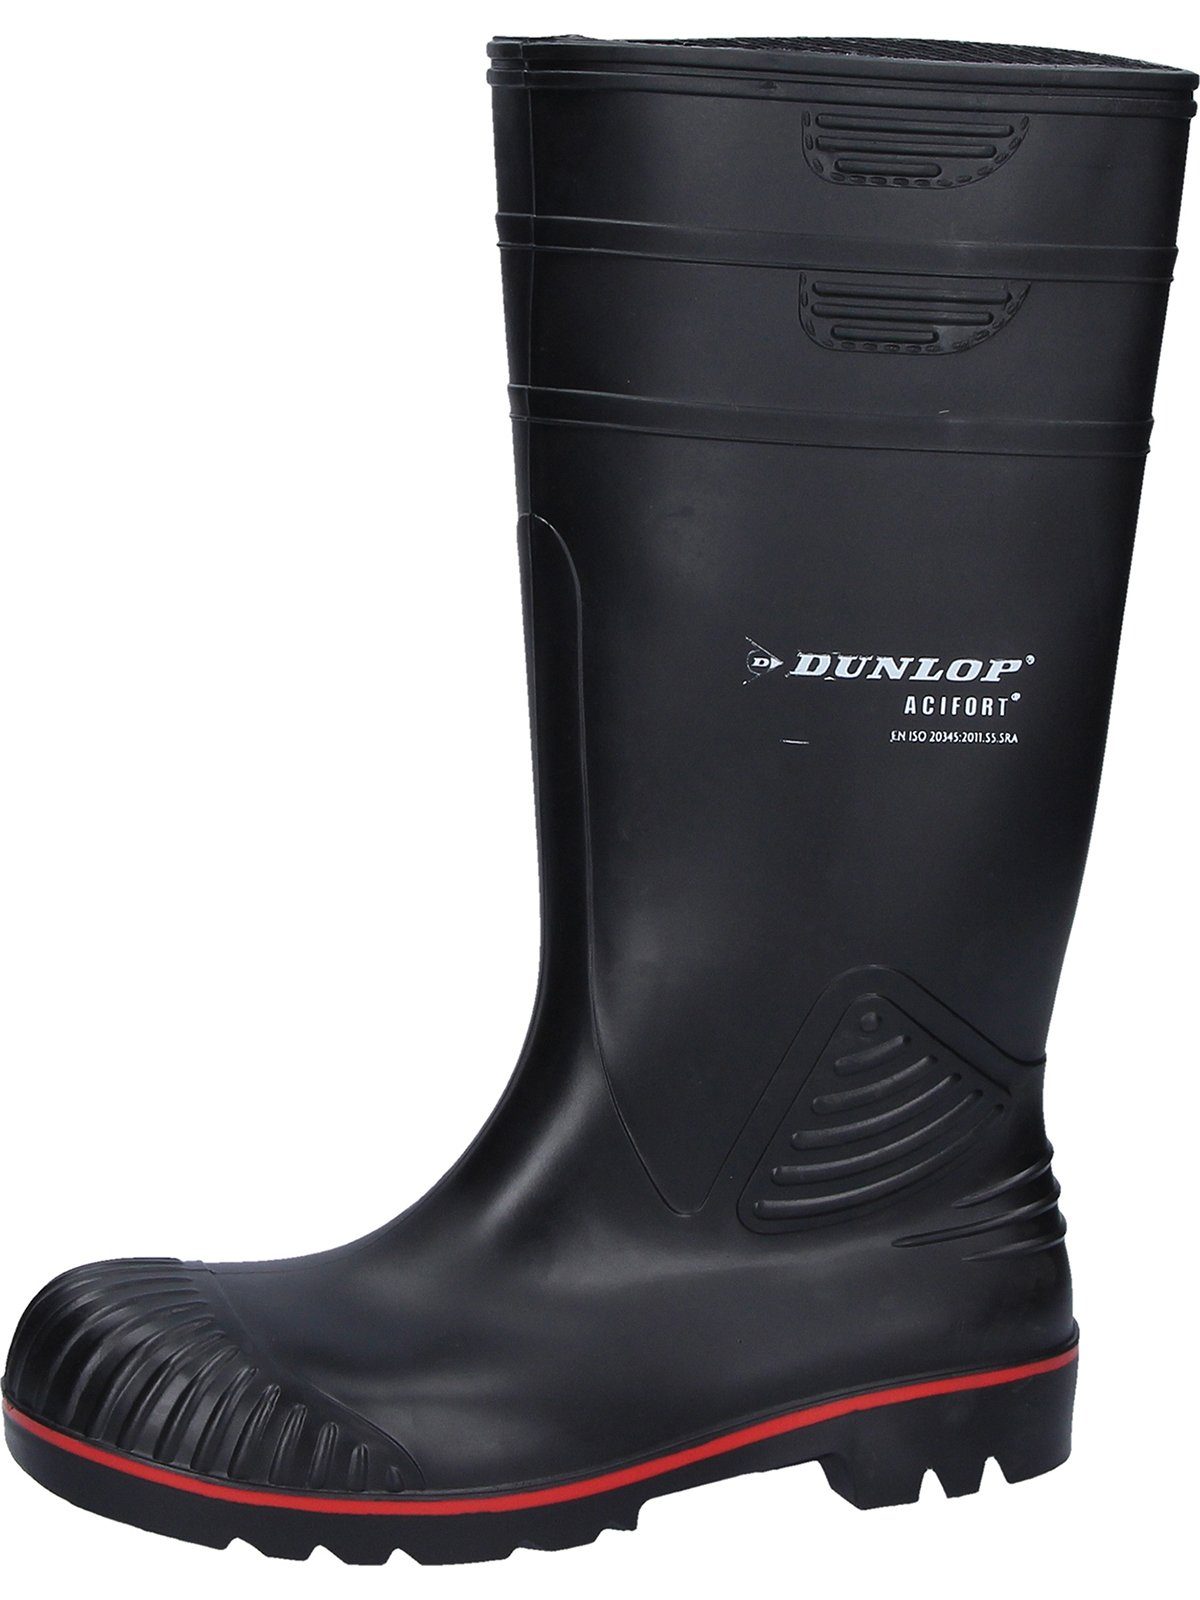 Stiefel Acifort Dunlop_Workwear